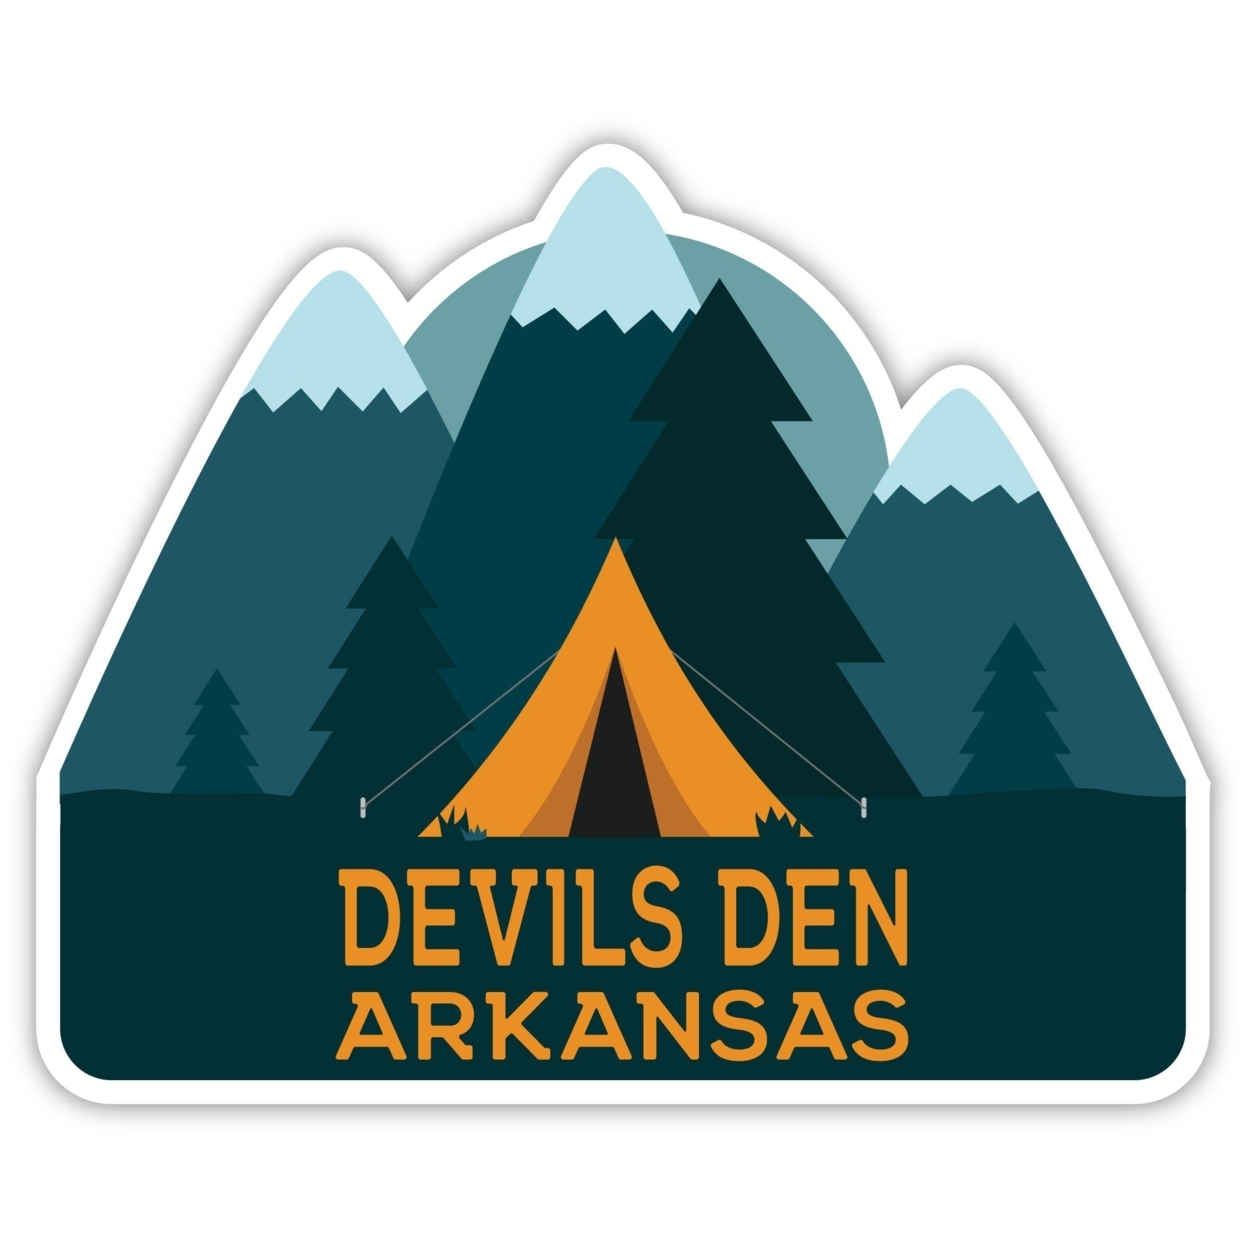 Devils Den Arkansas Souvenir Decorative Stickers (Choose Theme And Size) - 4-Pack, 10-Inch, Tent